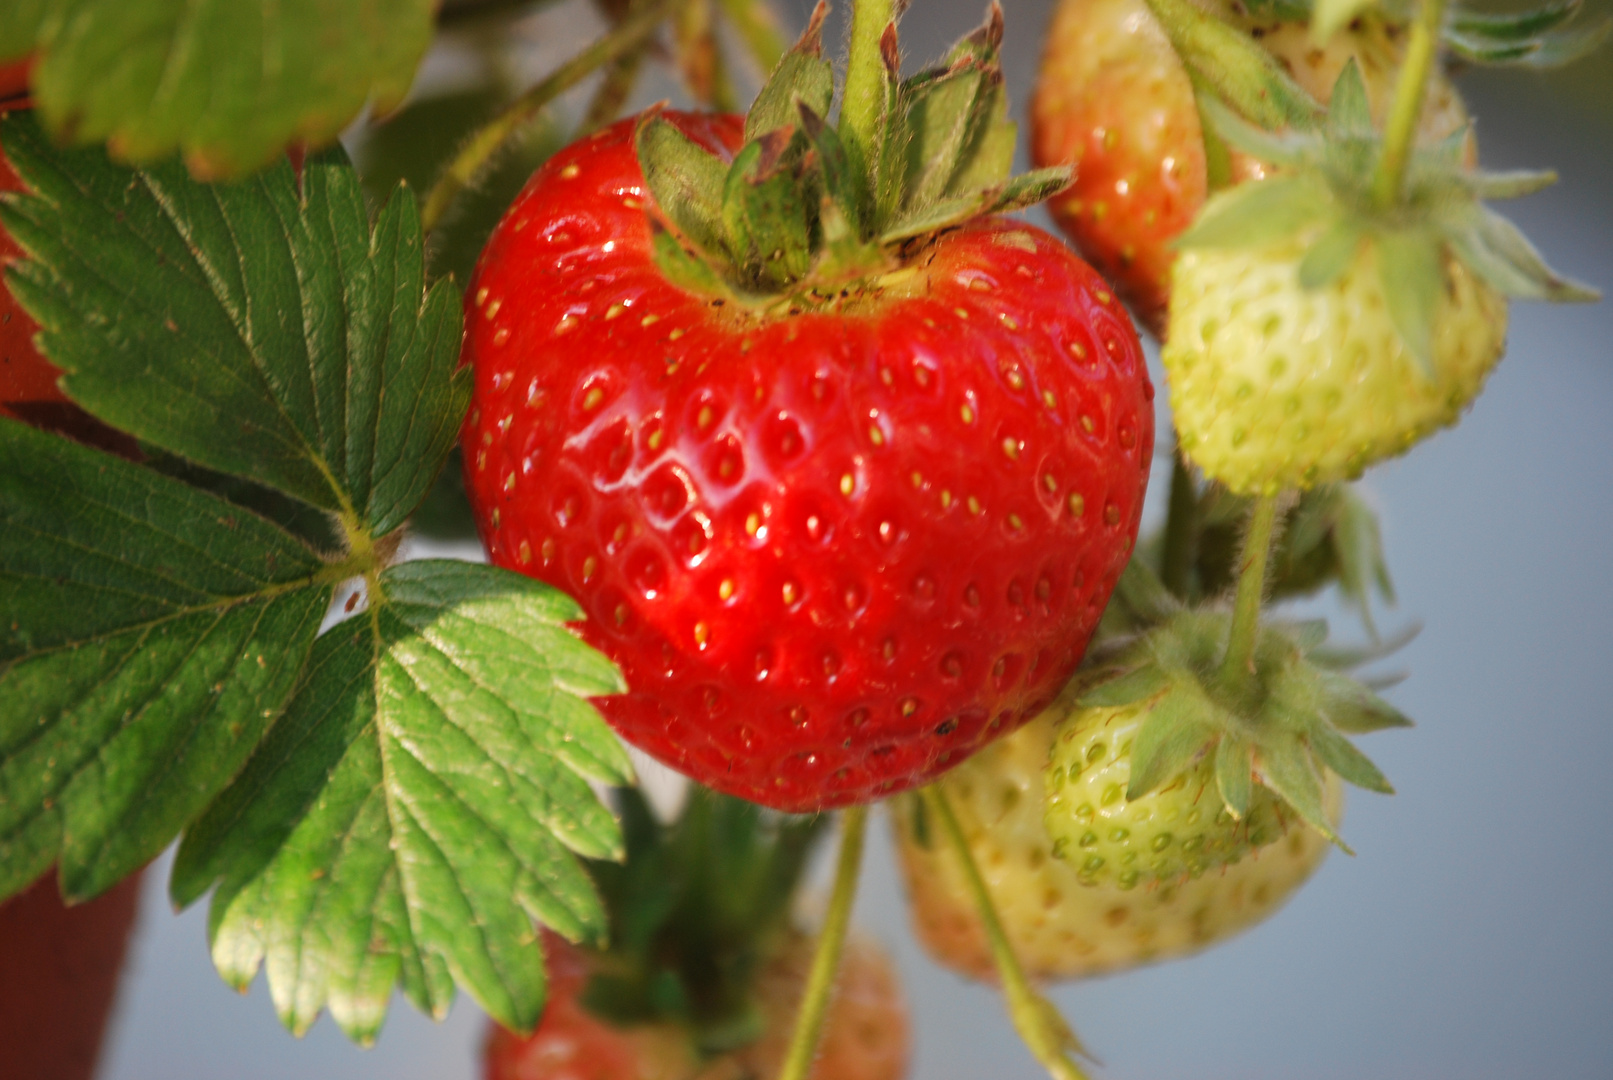 Strawberries ripening